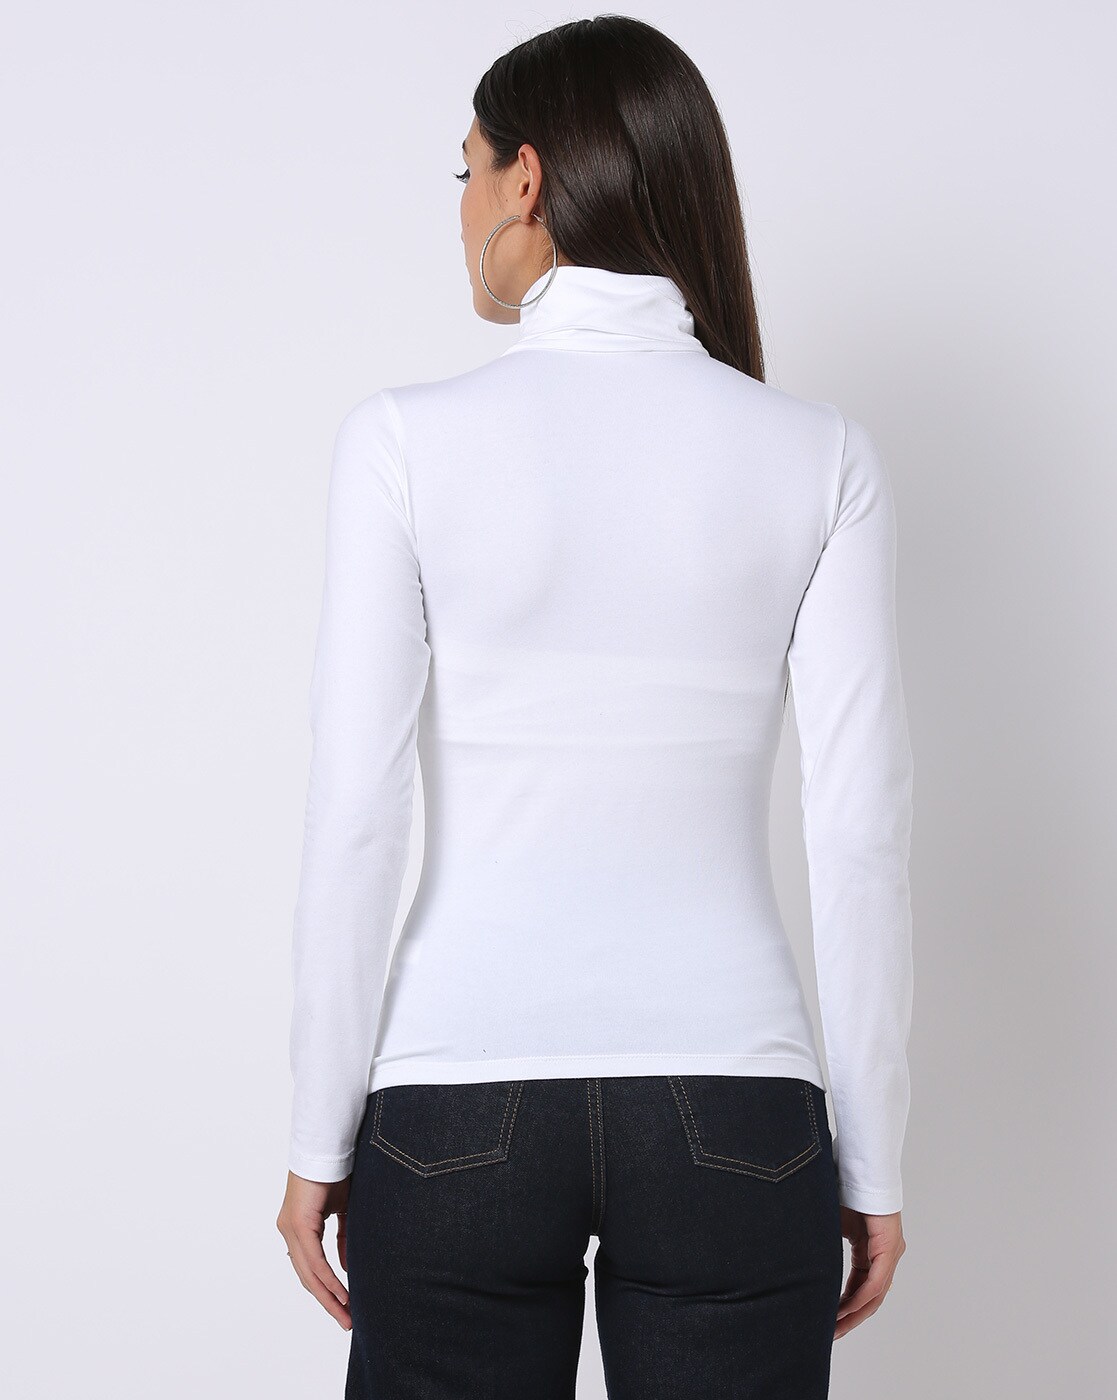 White Long Sleeve for Female